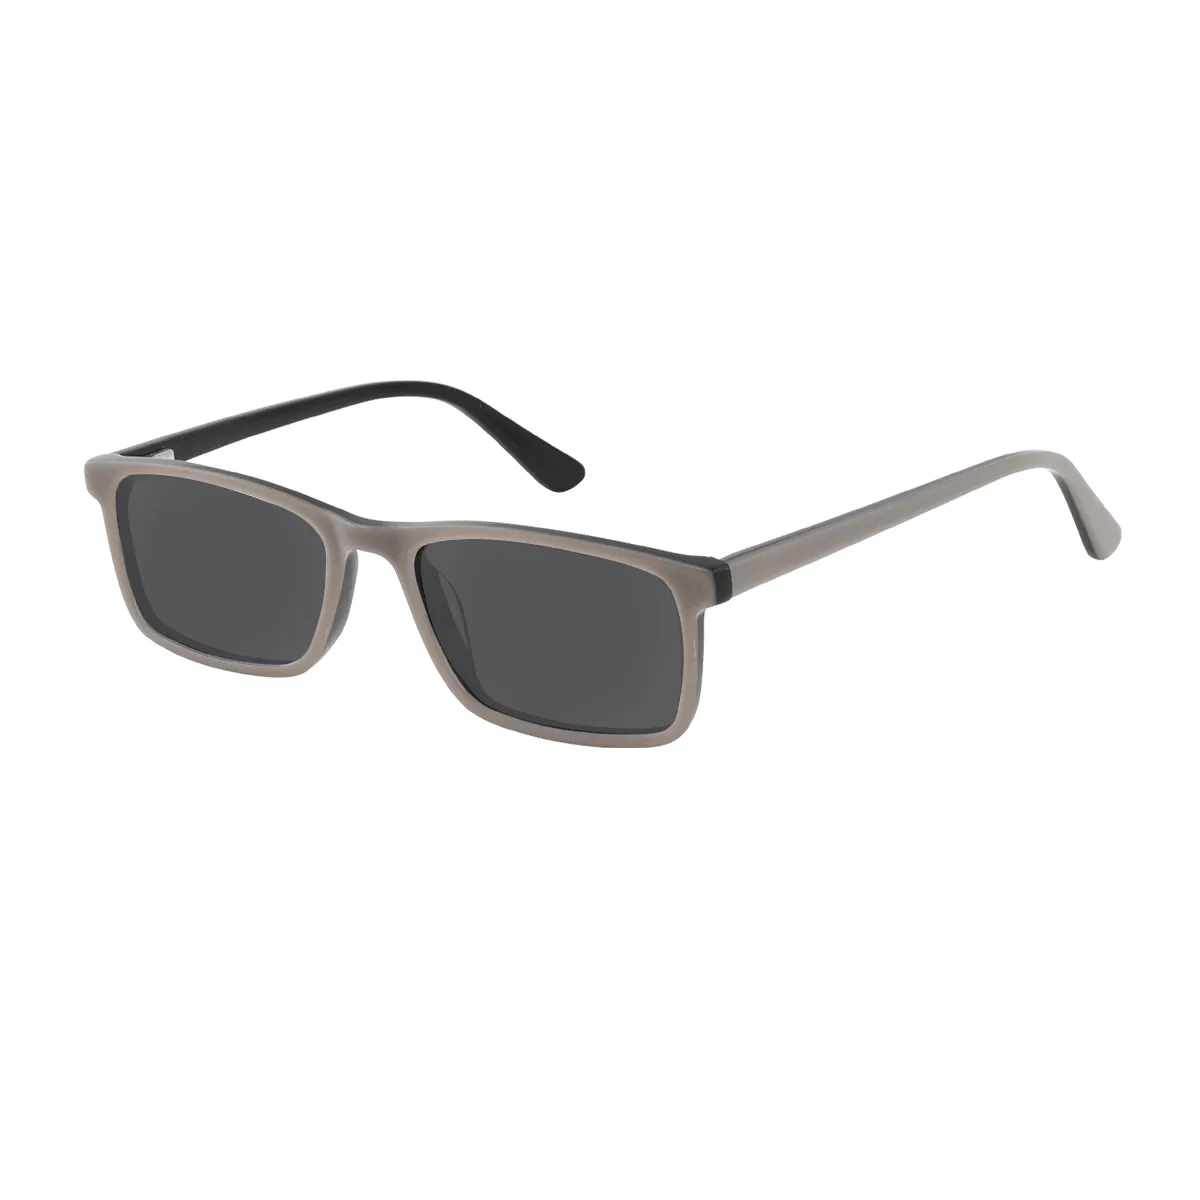 Mullins - Rectangle Gray Sunglasses for Men & Women